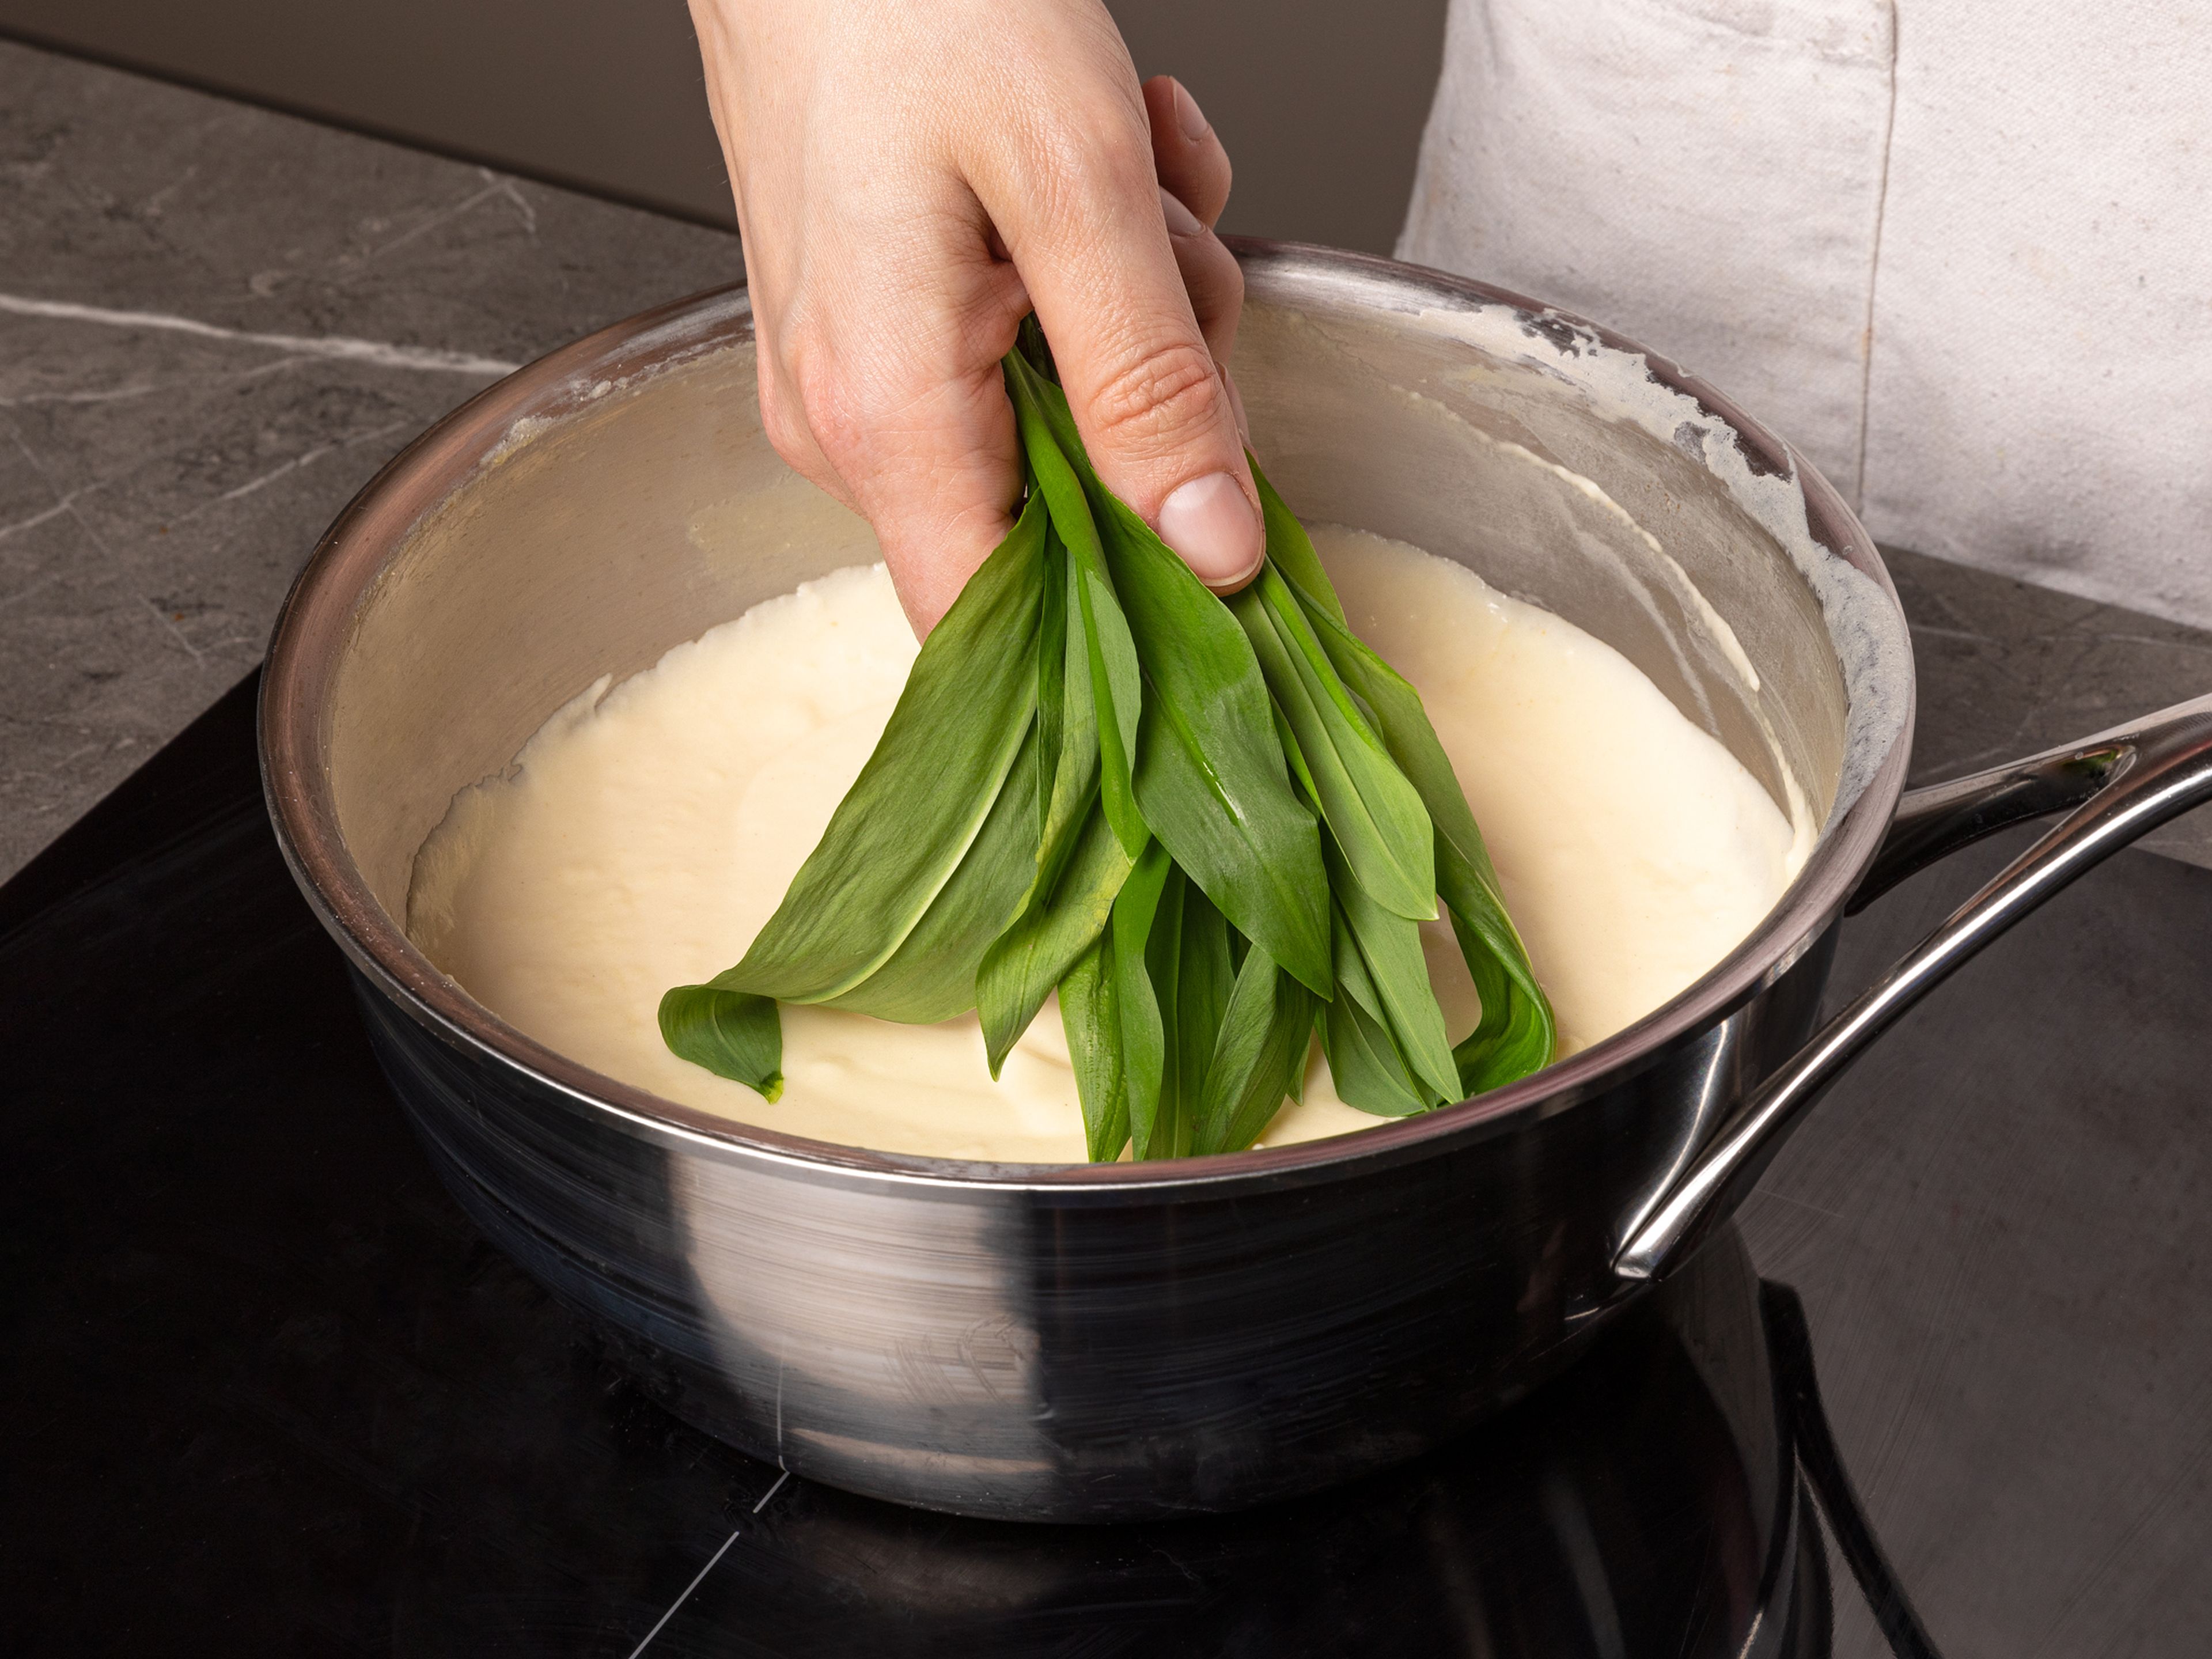 Butter in einem Topf schmelzen, Mehl dazugeben und ca. 1–2 Min. unter Rühren anrösten. Milch und ungesüßte Kondensmilch einrühren. Bei starker Hitze zum Kochen bringen und unter Rühren ca. 1 Min. köcheln lassen. Hitze herunterschalten, Dijon-Senf und Essig hinzufügen und mit Salz abschmecken. Bärlauch, Spinat und ¾ des Käses in die Soße geben, kurz verrühren, bis Spinat und Bärlauch welk werden, dann vom Herd nehmen. Die Soße mit einem Stabmixer glatt pürieren. Mit Salz und Pfeffer abschmecken.